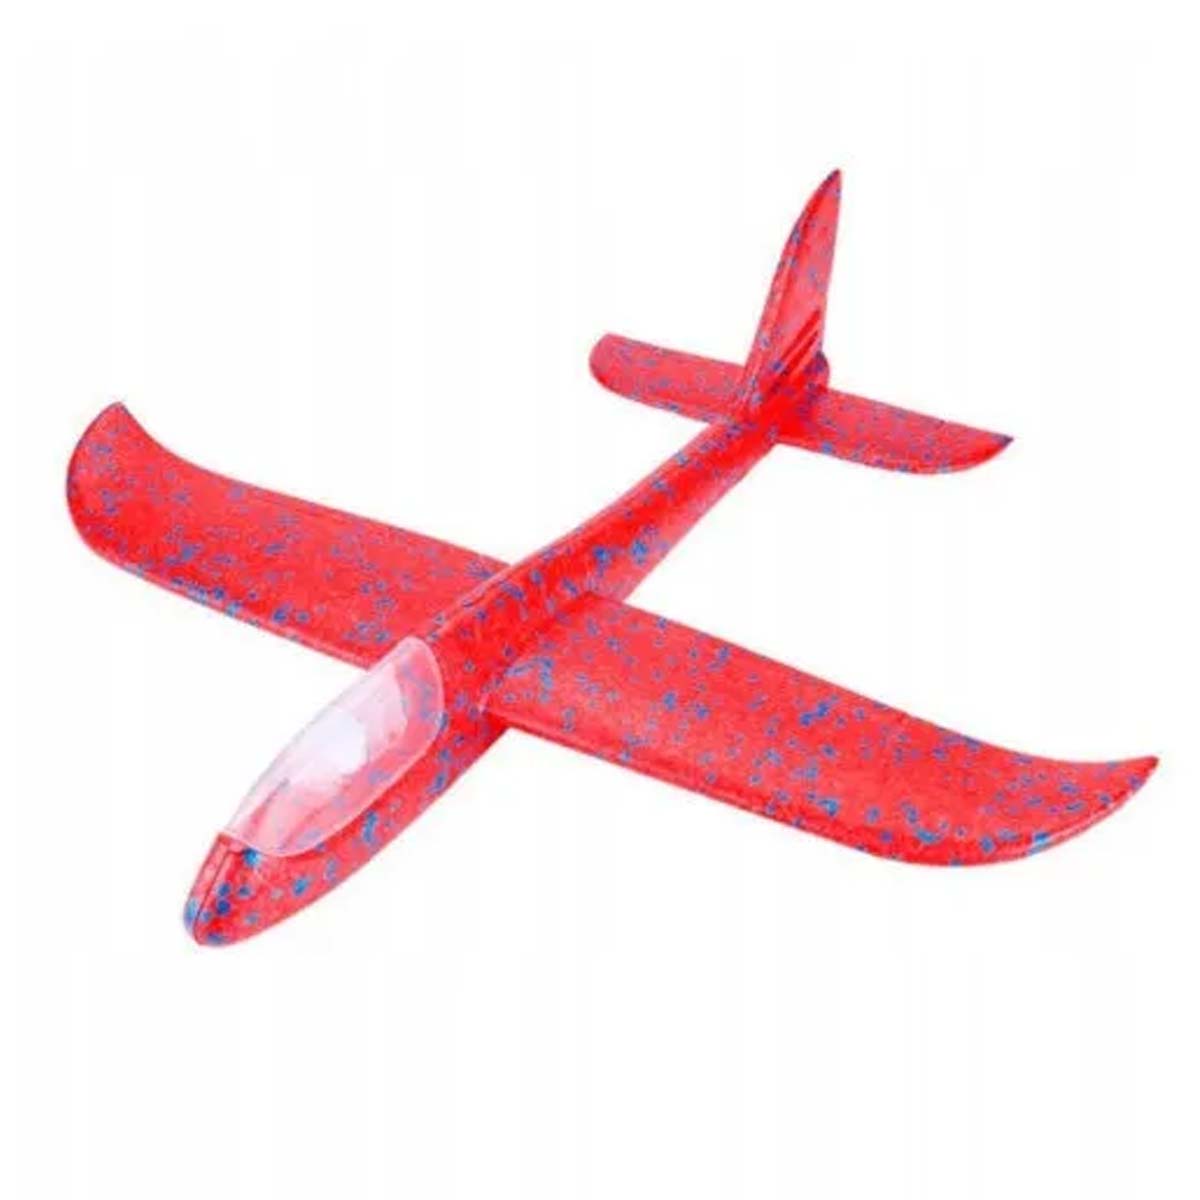 Метательный самолет из пенопласта, 45 см, LED подсветка кабины, цвет красный